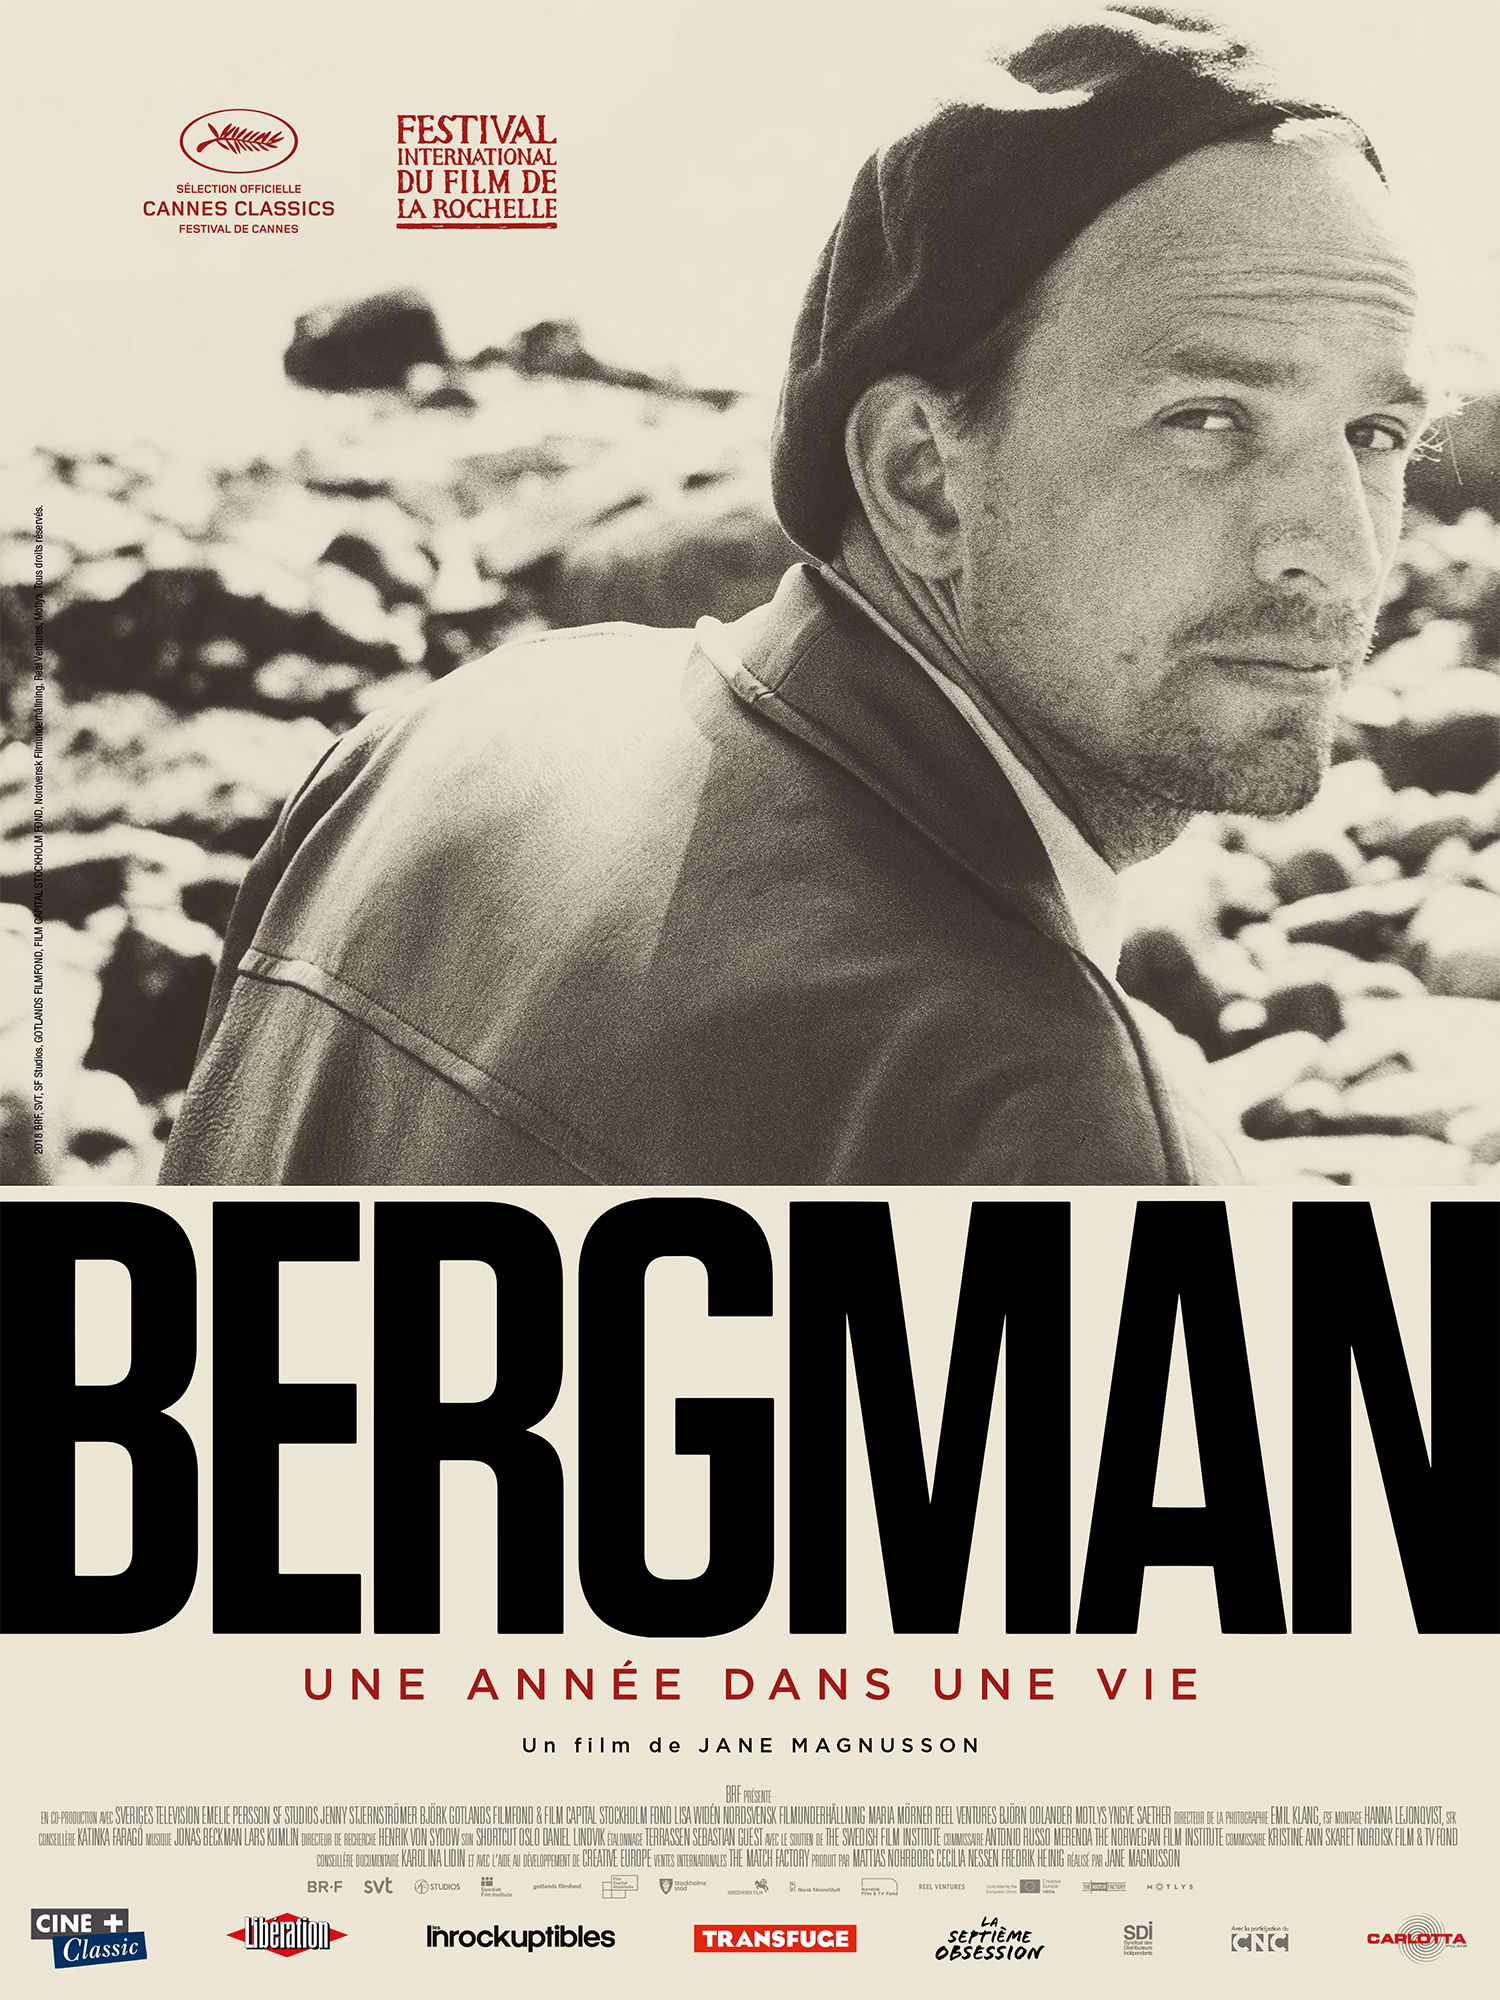 Bergman, une année dans une vie - Documentaire (2018) streaming VF gratuit complet